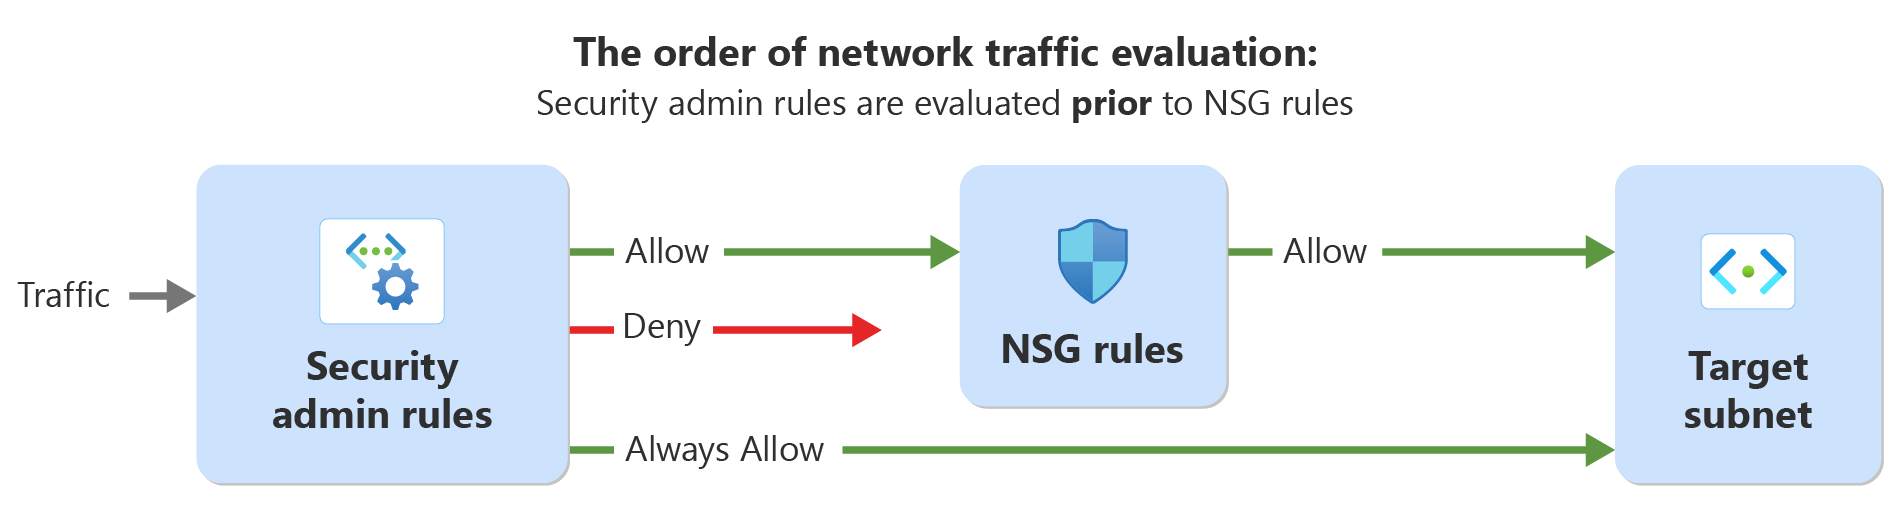 보안 관리자 규칙 및 네트워크 보안 규칙을 사용한 네트워크 트래픽 평가 순서를 보여 주는 다이어그램